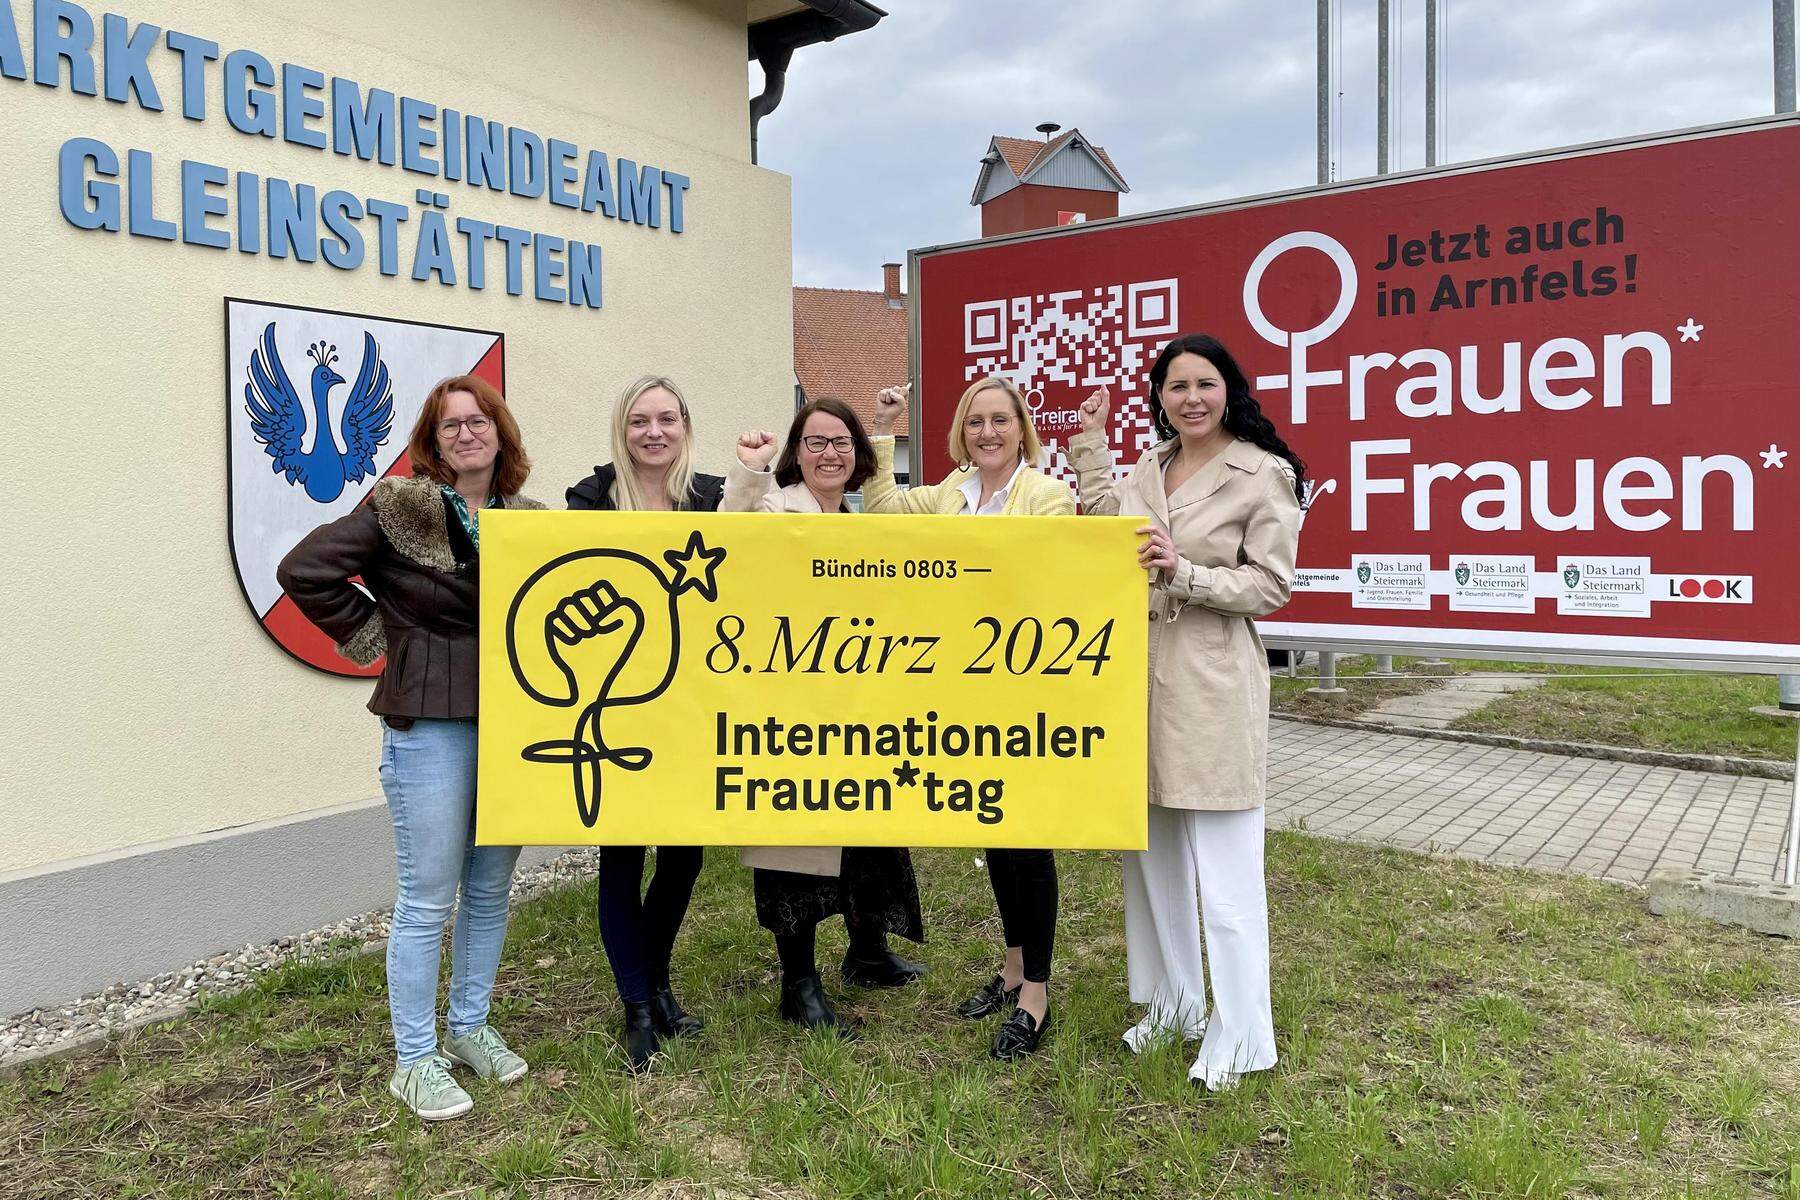 In Leibnitz und Arnfels: Wieso es keine gravierenden Probleme braucht, um zur Frauenberatung zu gehen